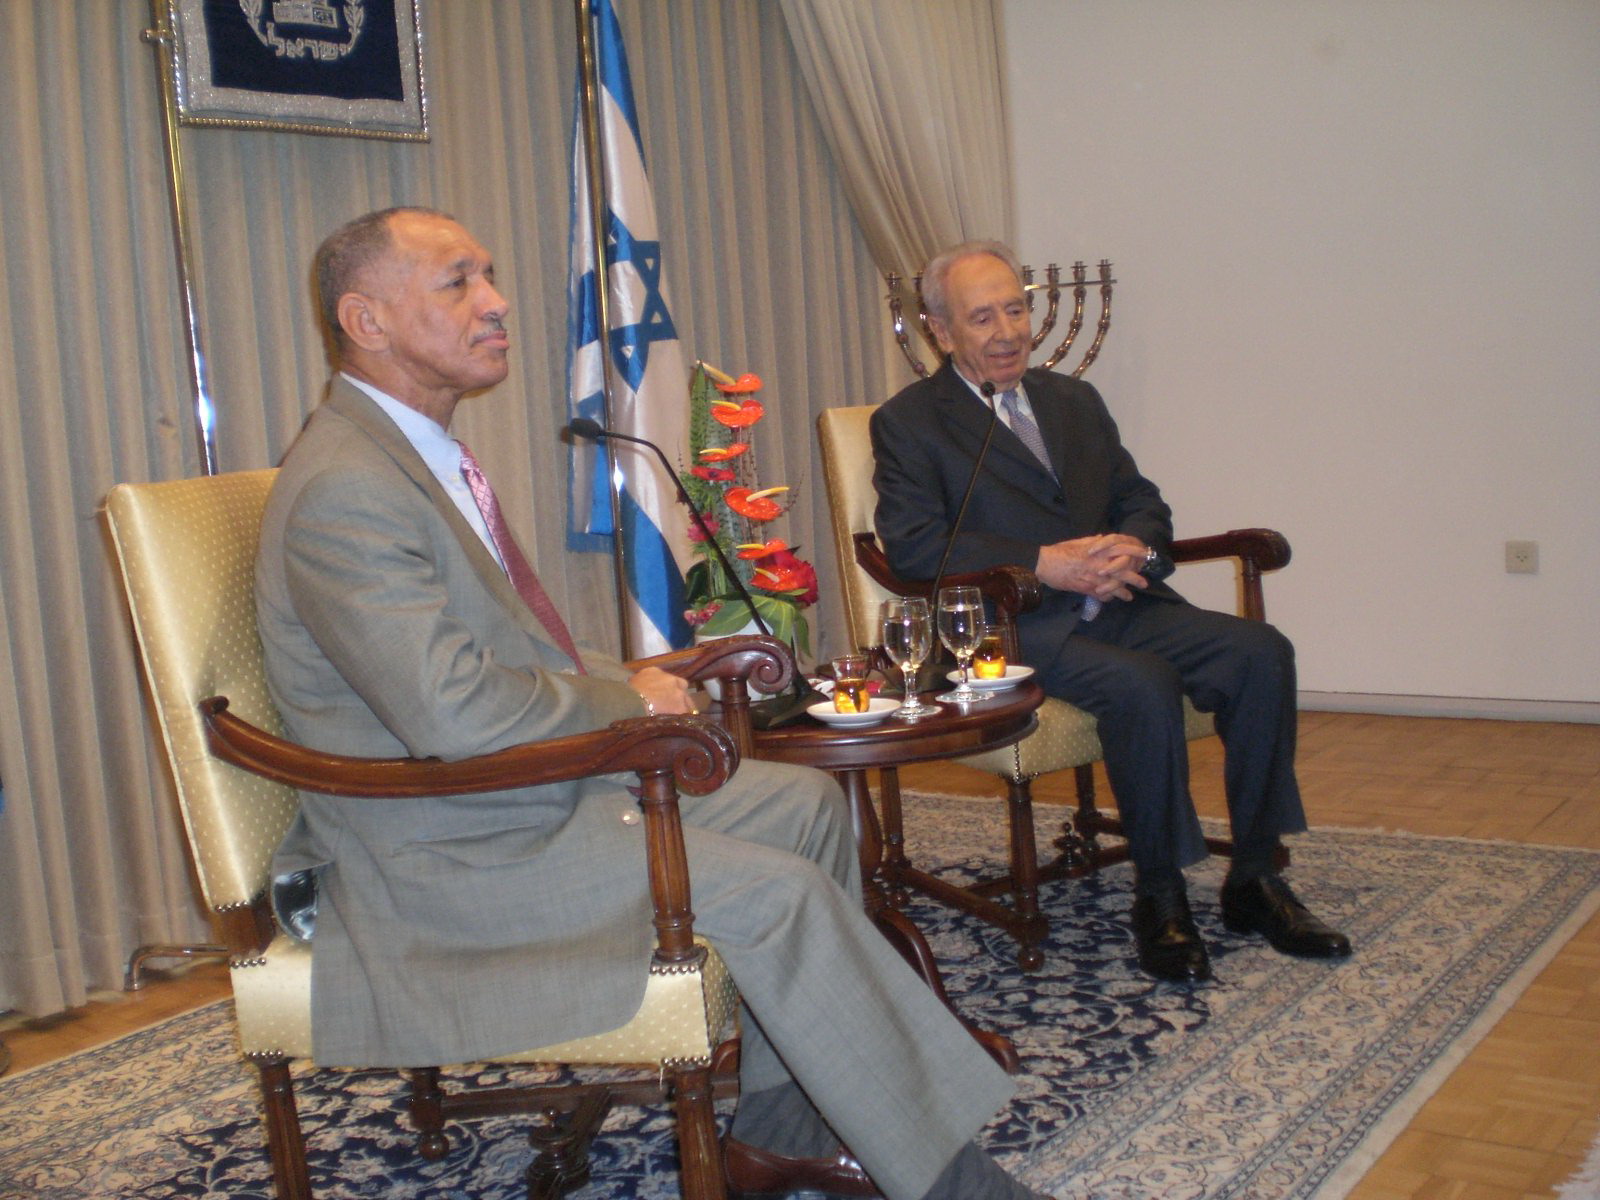 ראש נאס"א צ'ארלס בולדן ונשיא המדינה שמעון פר, הבוקר במשכן הנשיא הבוקר. צילום: טל ענבר